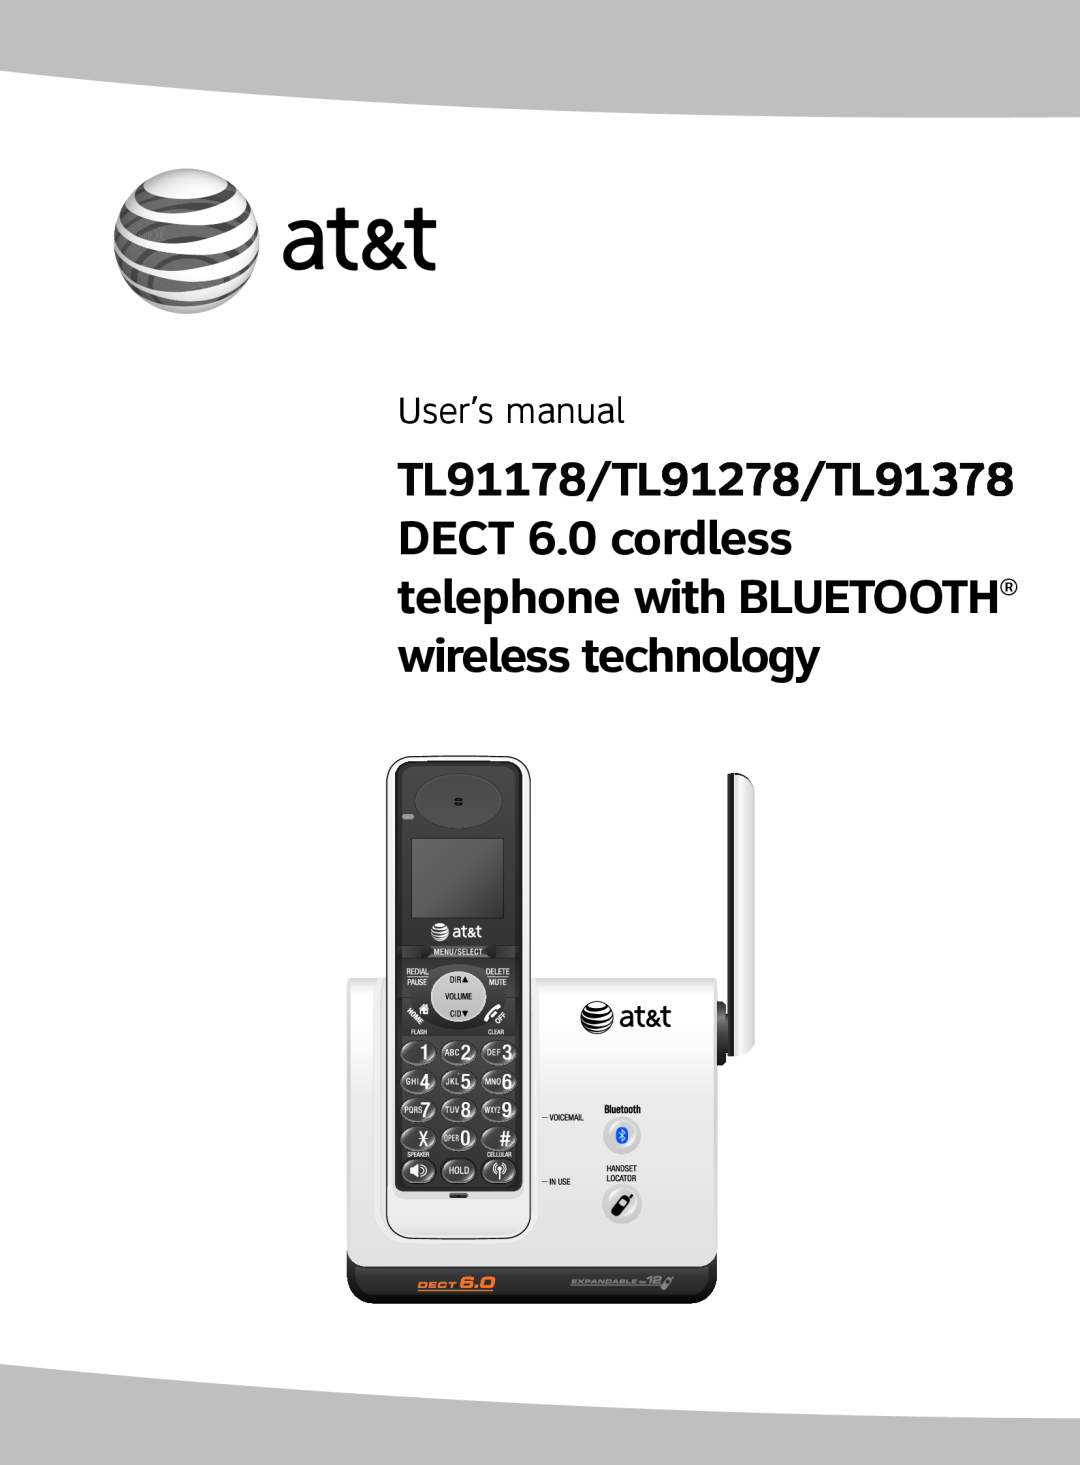 AT&T TL91378, TL9178, TL91178, TL91278 user manual User’s manual 